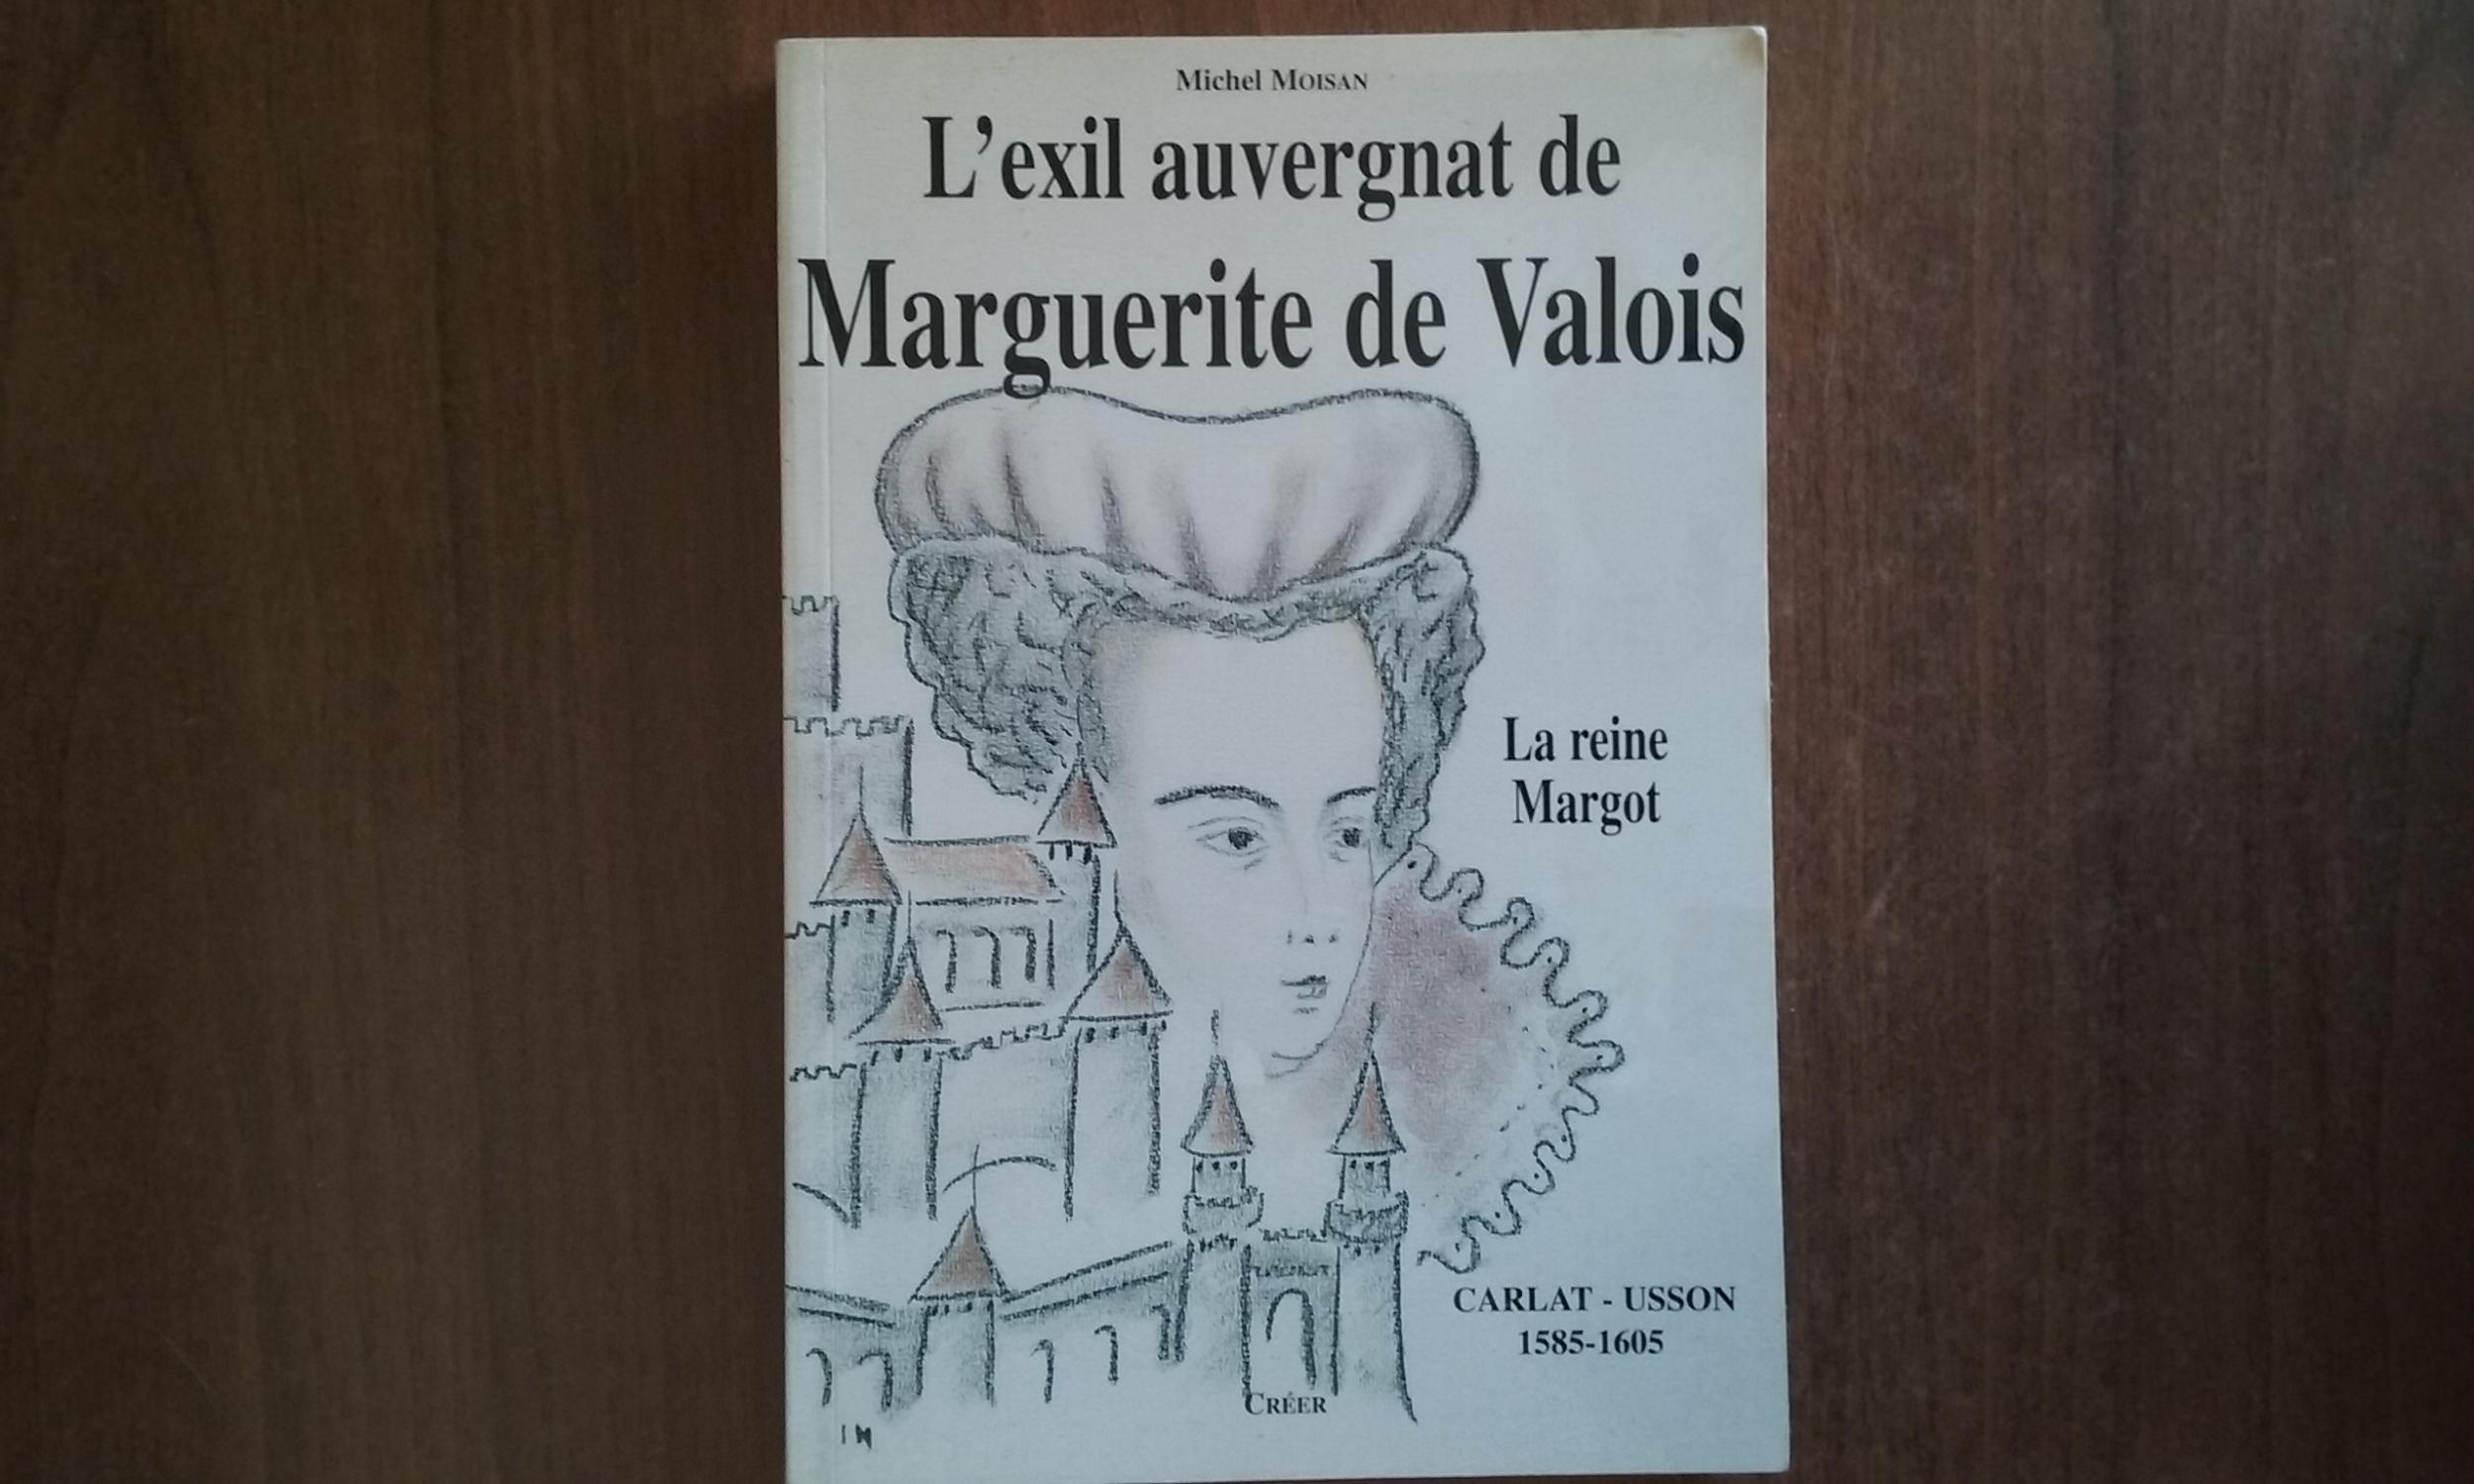 L'exil auvergnat de Marguerite de Valois (La reine Margot) - Carlat - Usson 1585-1605 - MOISAN Michel